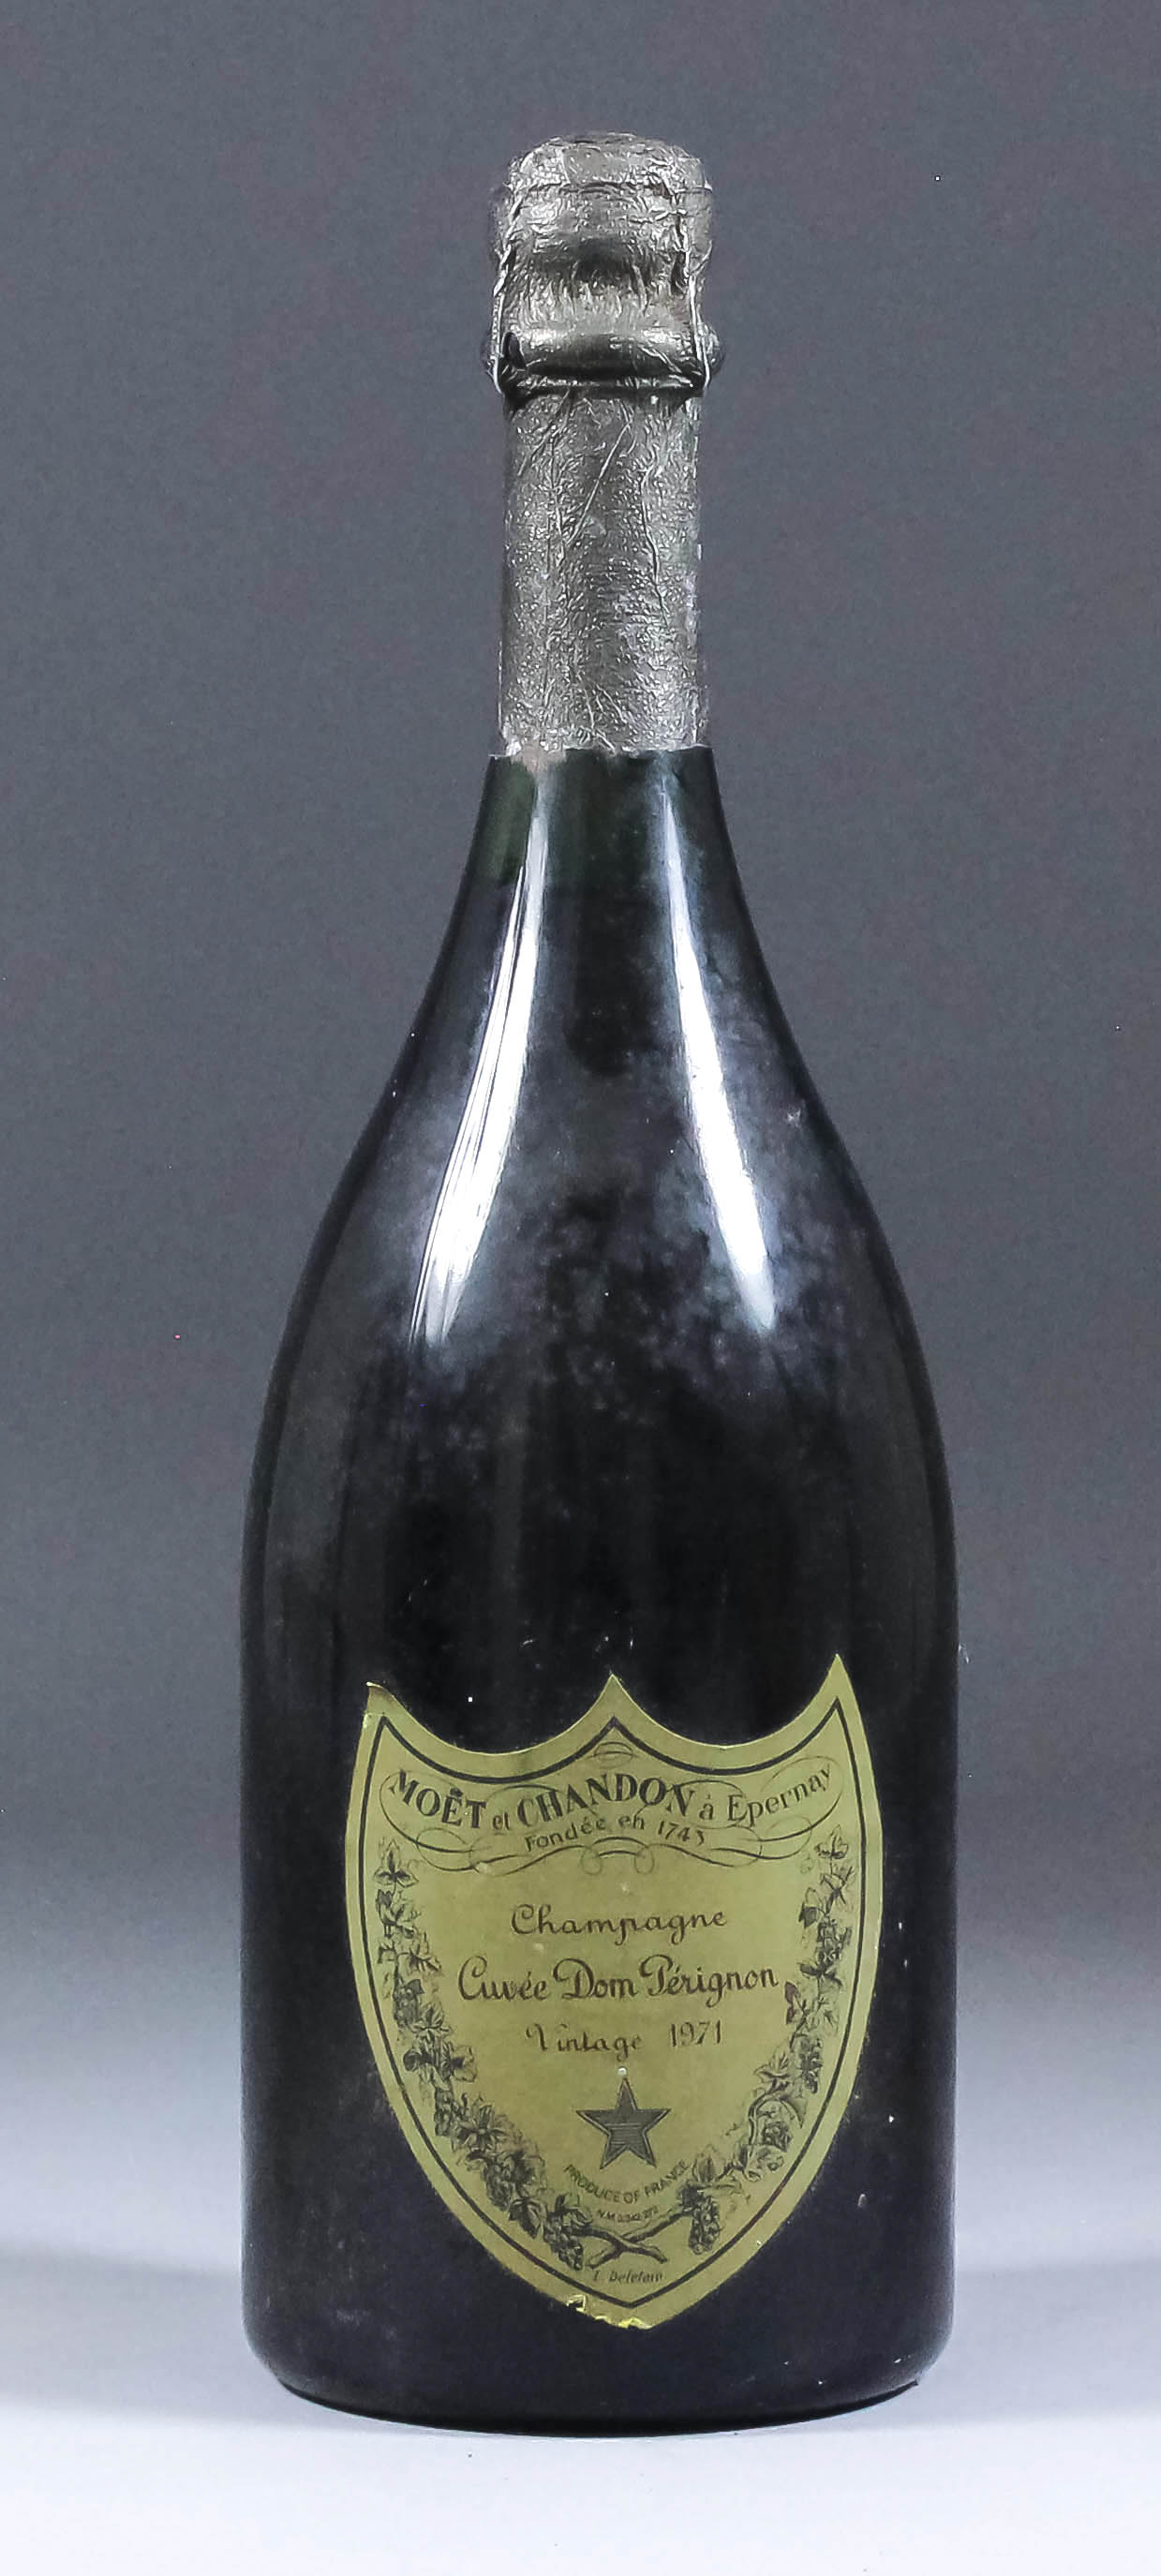 A bottle of 1971 Moet et Chandon "Dom Perignon" vintage champagne